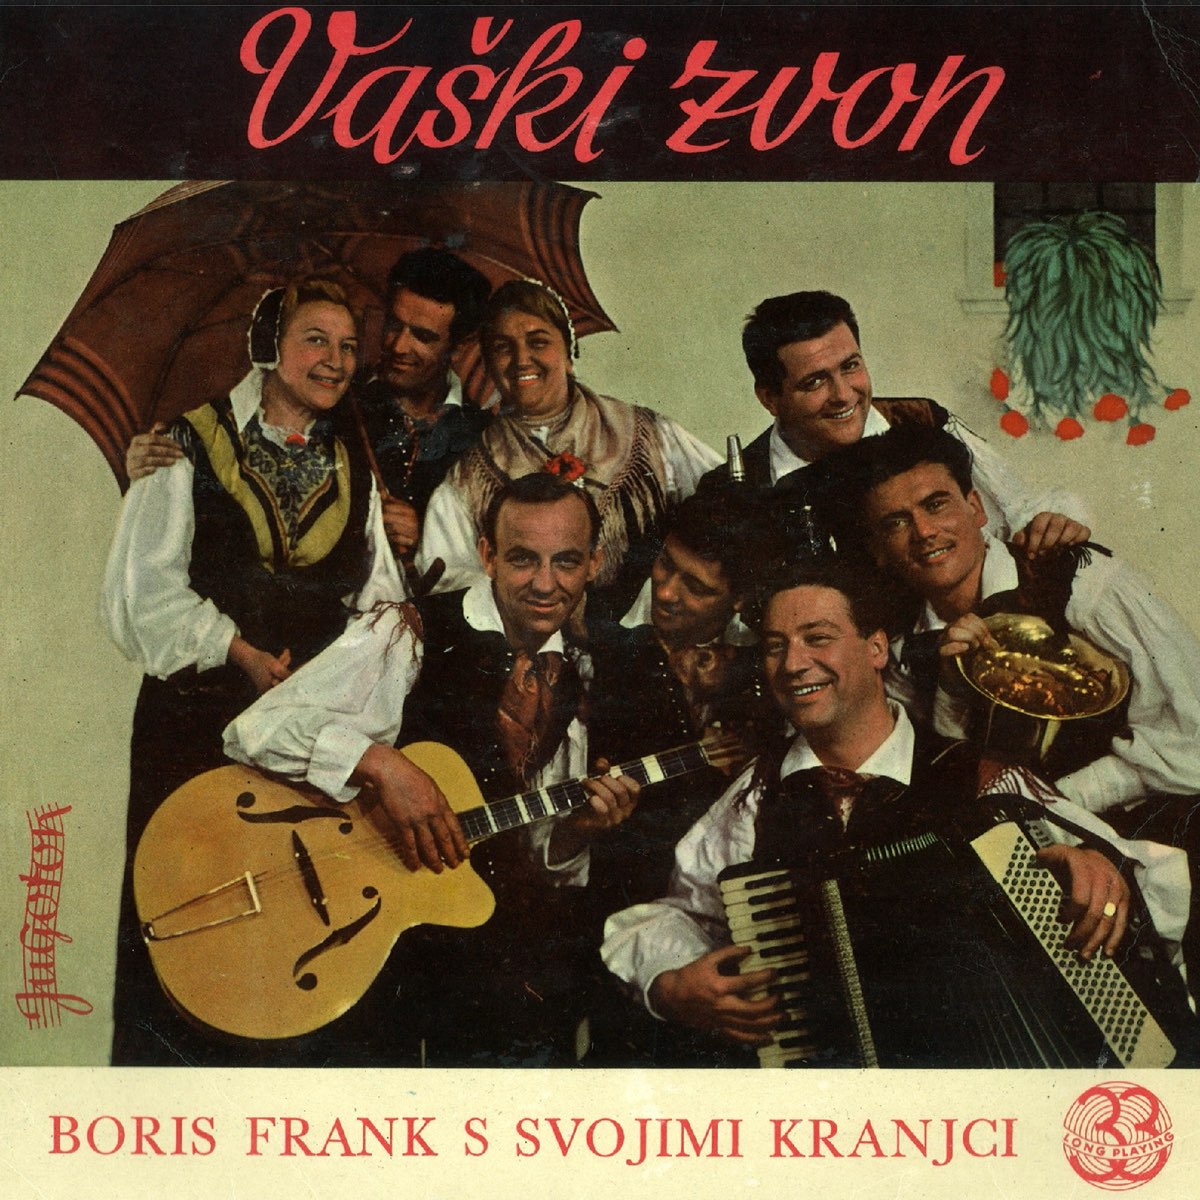 Vaški Zvon - Album by BORIS FRANK S SVOJIMI KRANJCI - Apple Music